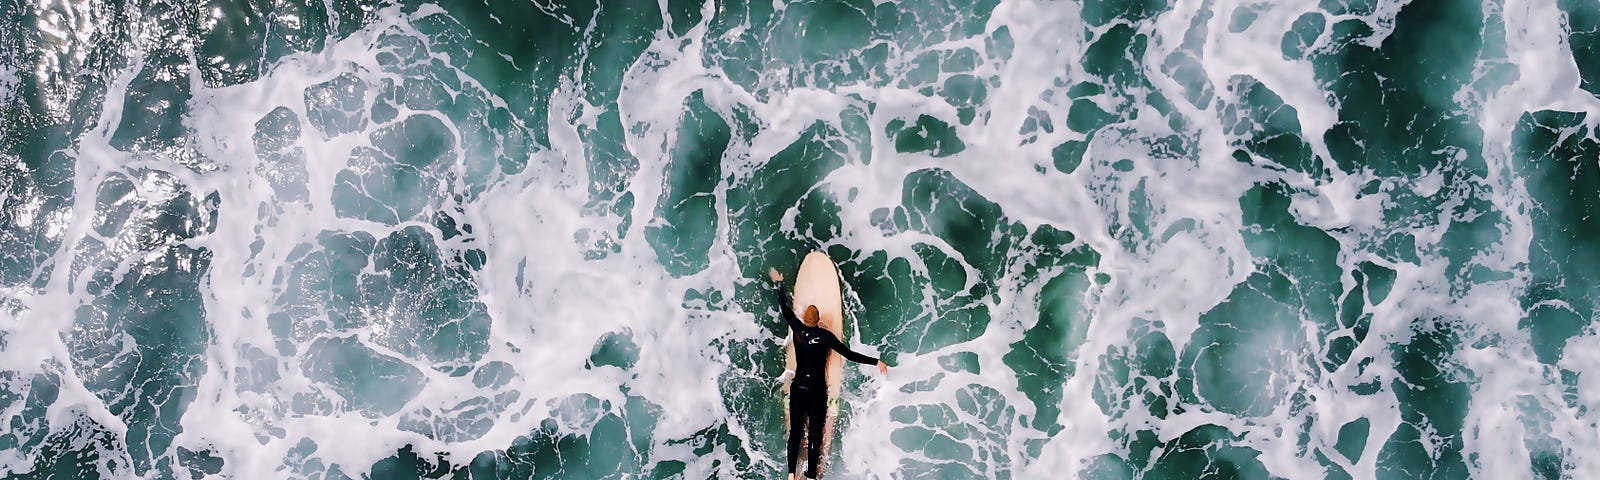 surfer paddling through turbulent water